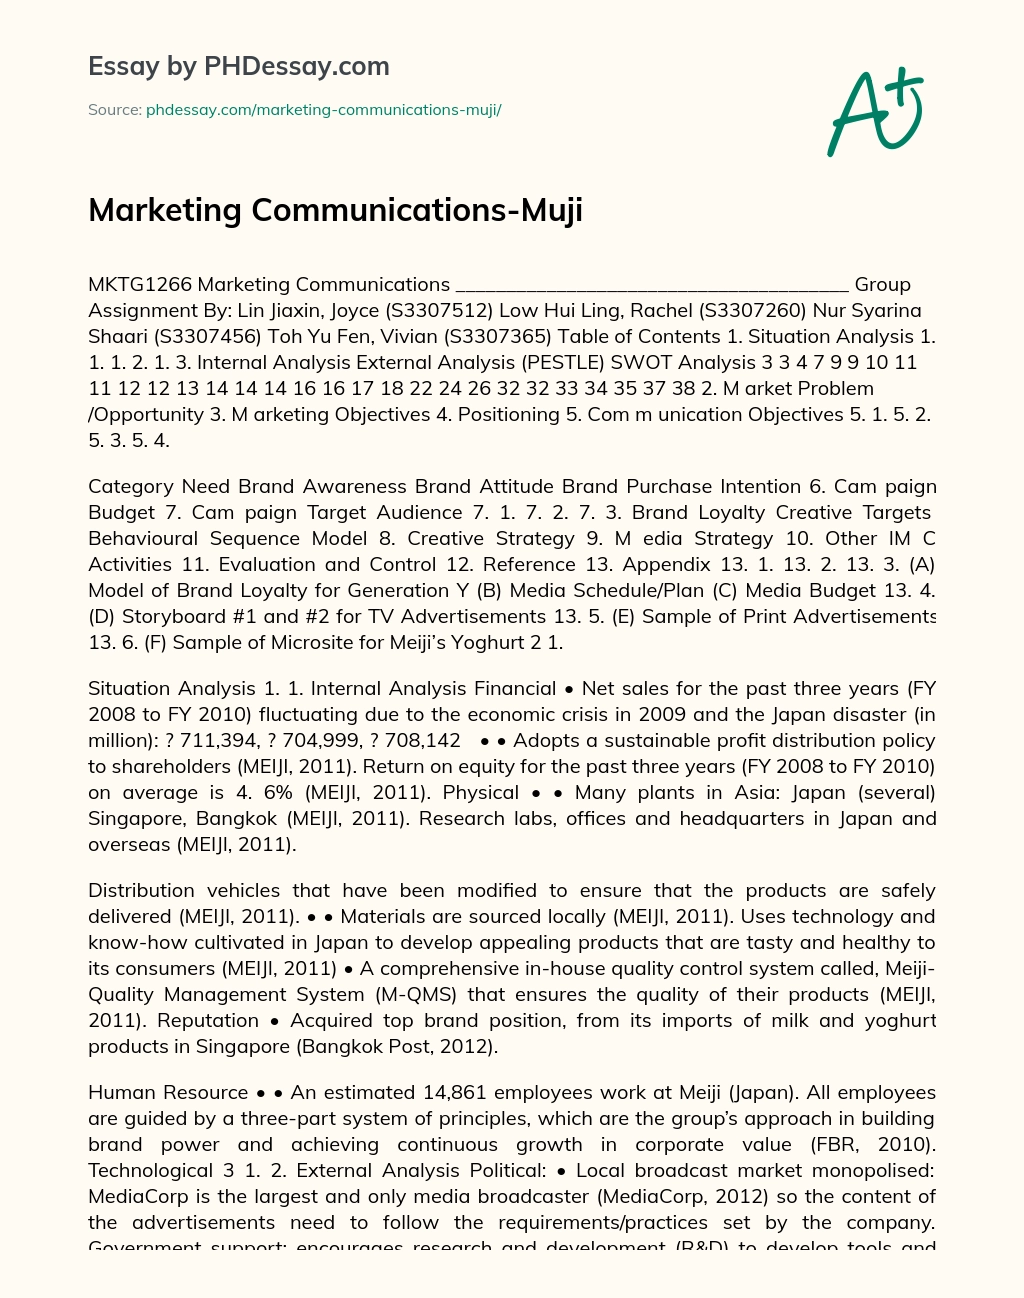 Marketing Communications-Muji essay